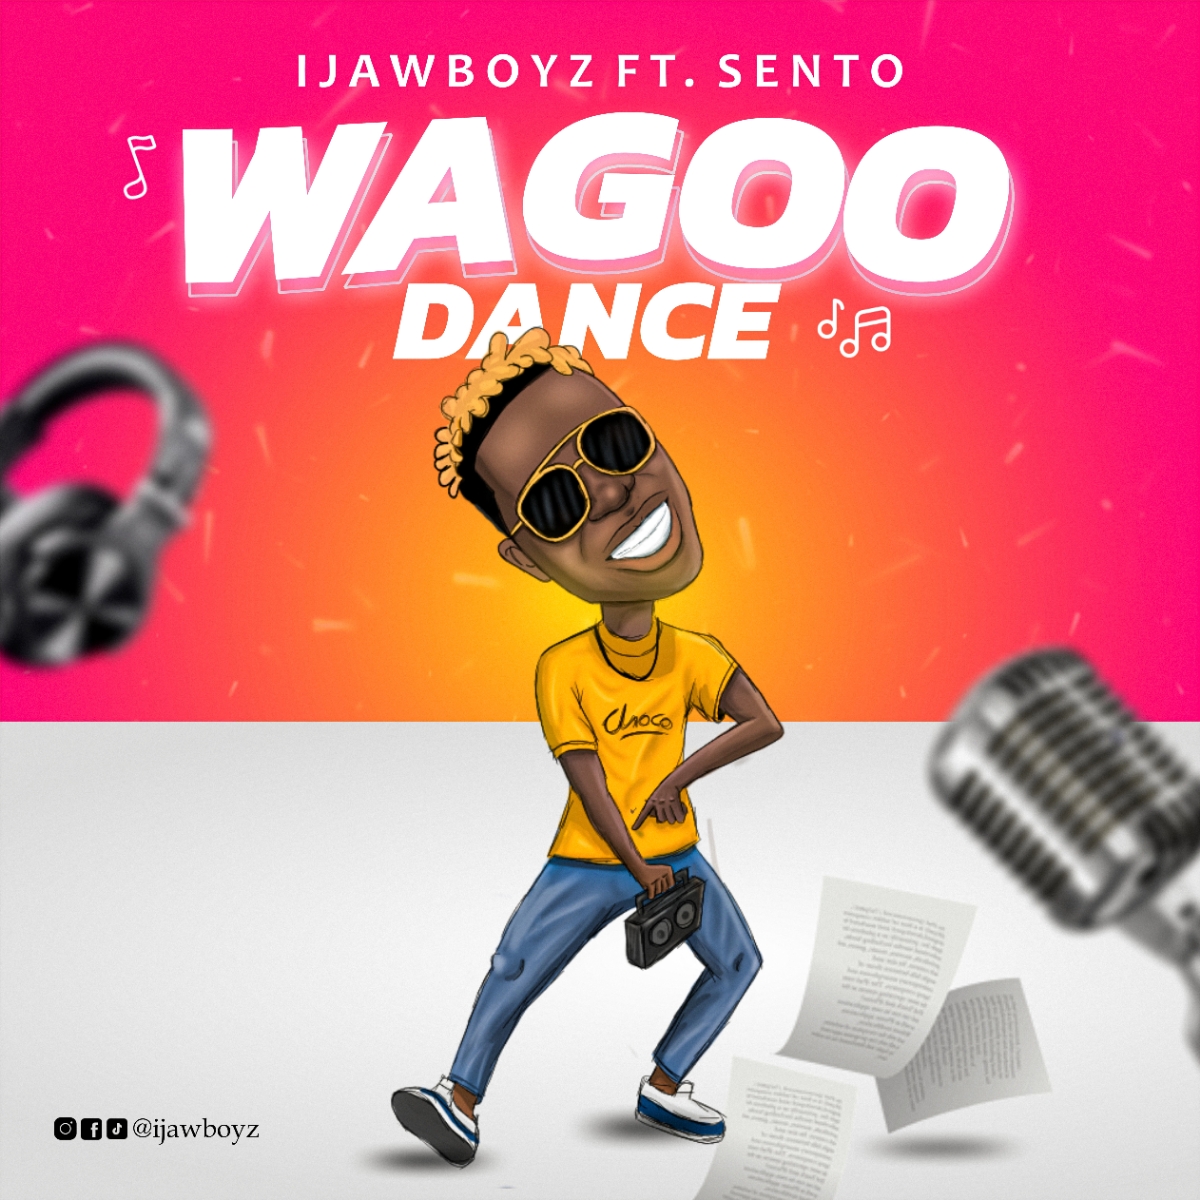 IjawBoyz -"Wagoo Dance" (Feat. Sento) 15